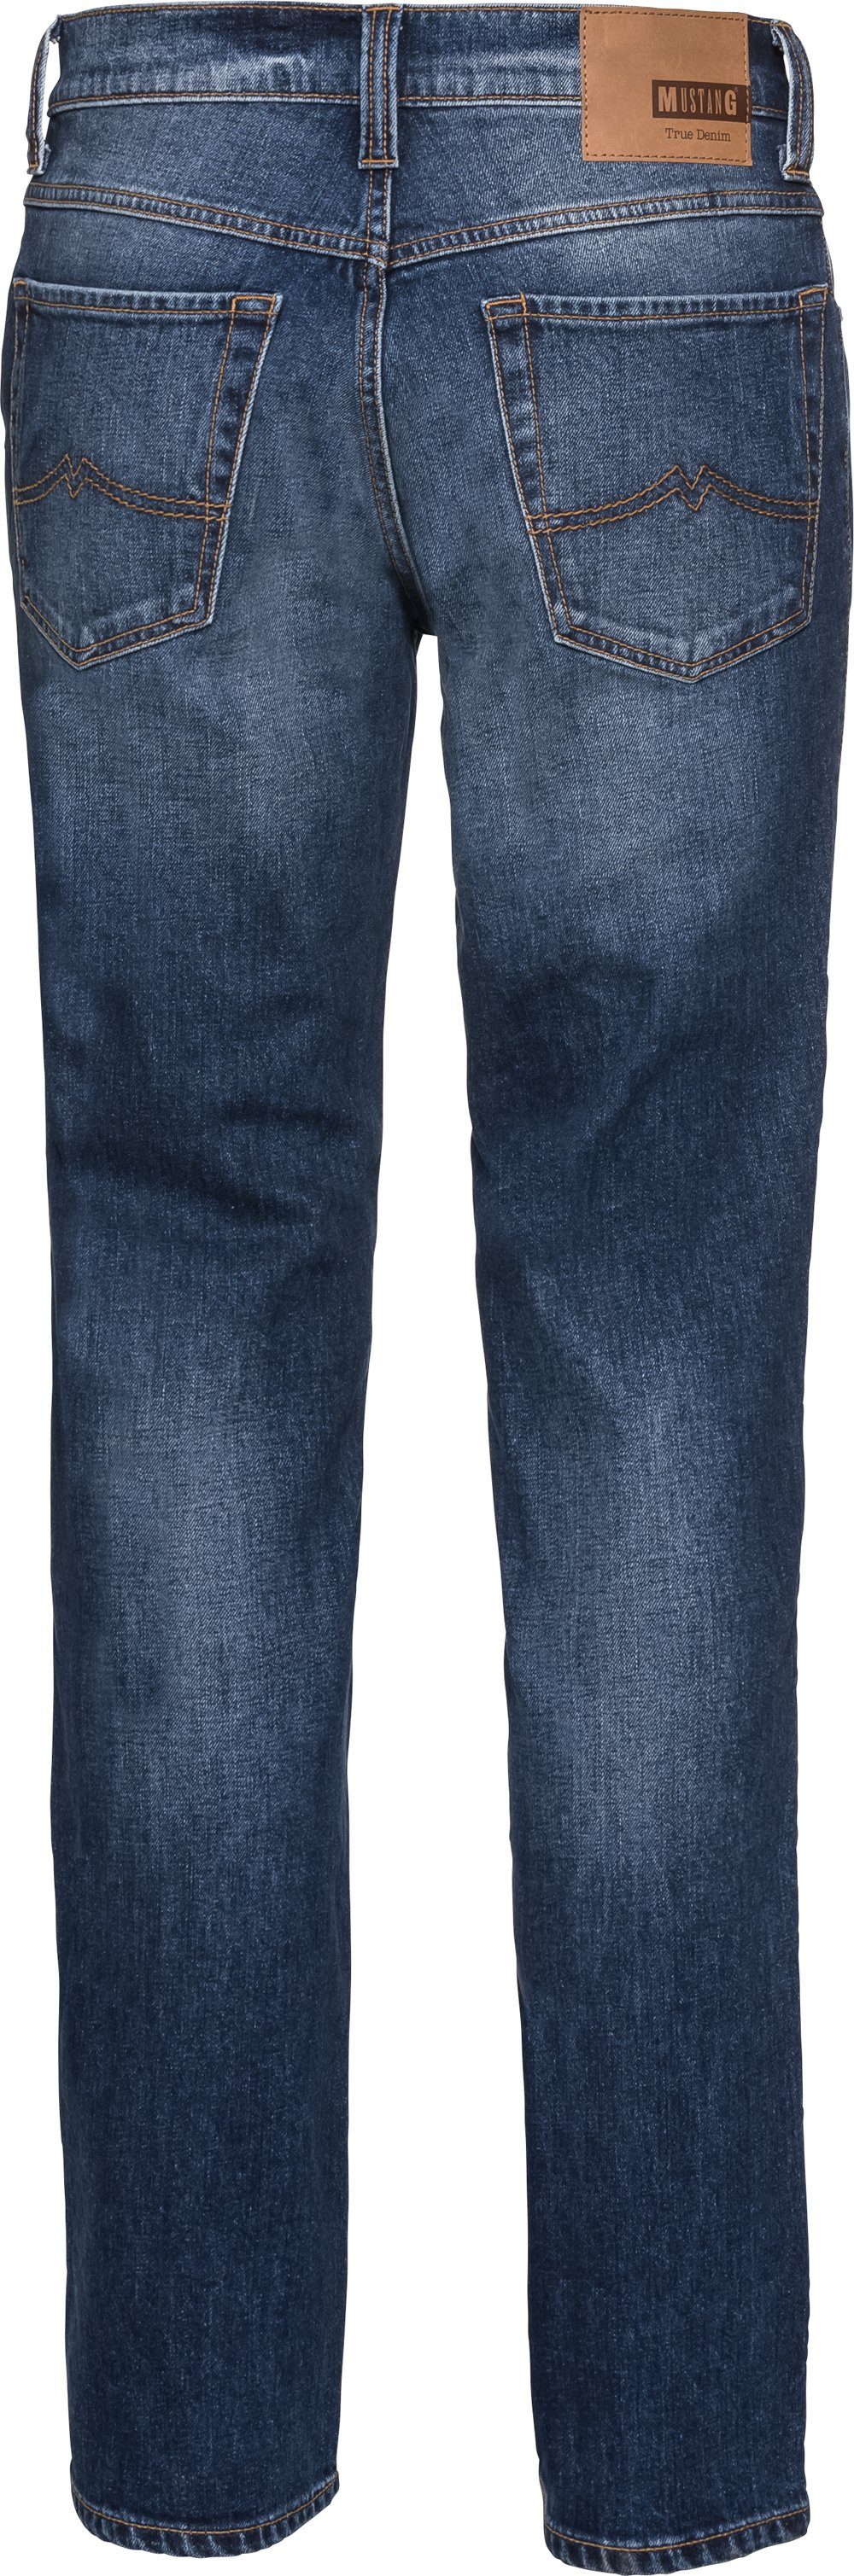 Stretch geradem Bund 5-Pocket-Style, MUSTANG im mit blau Beinverlauf Stretch-Jeans und